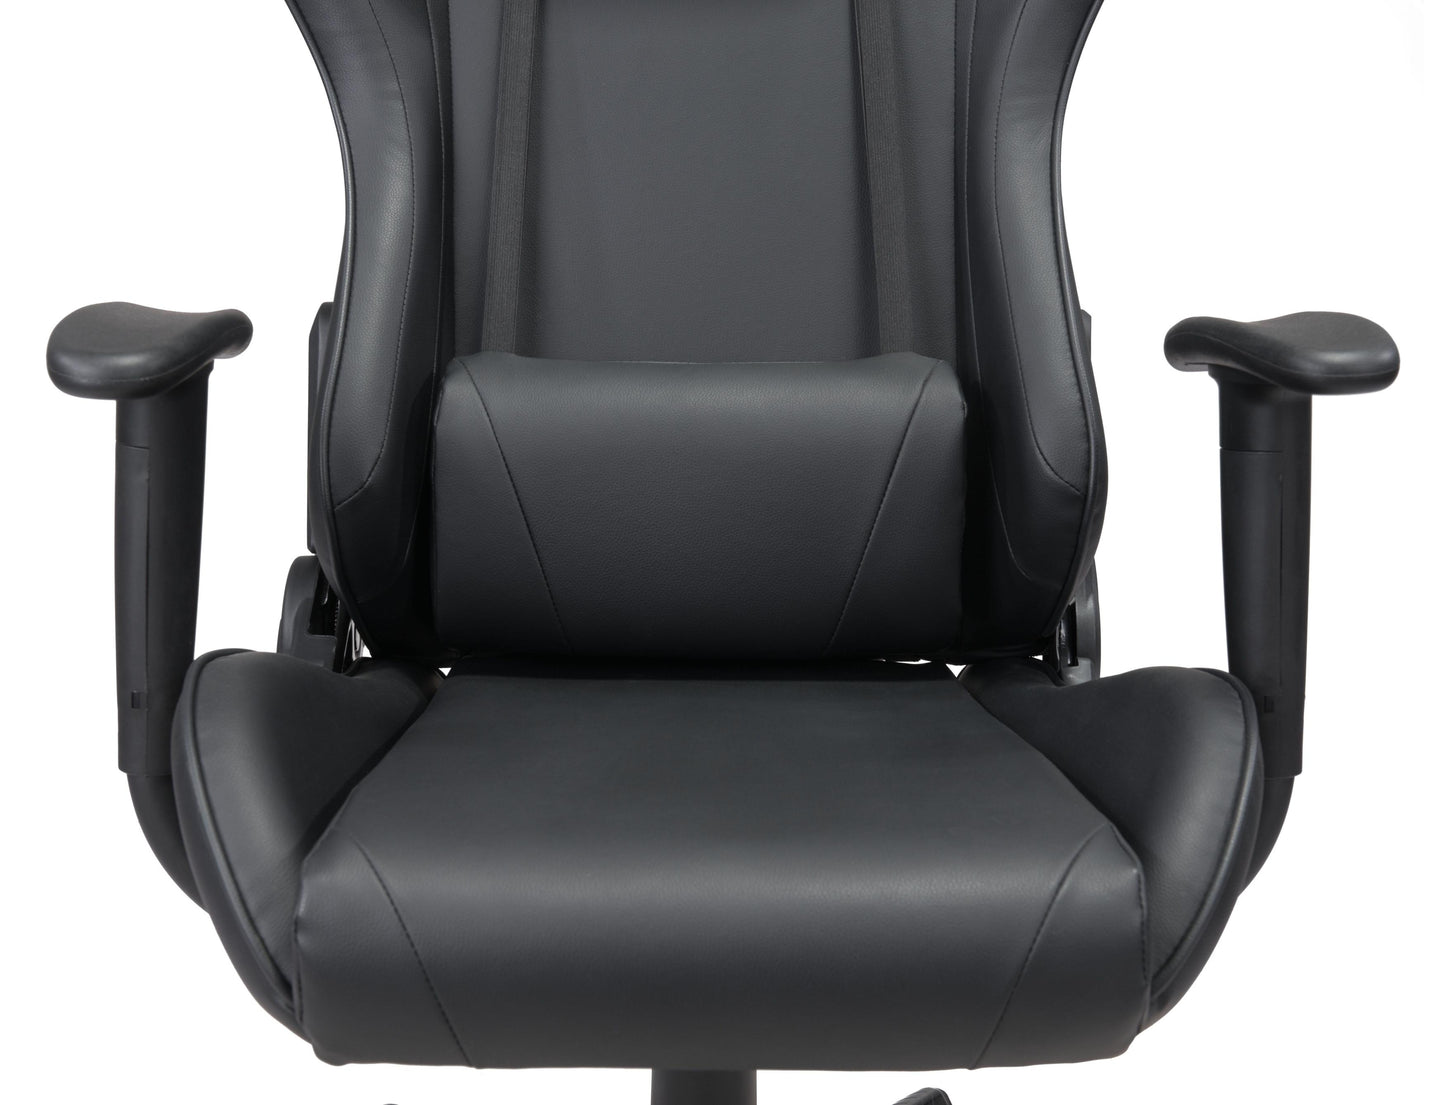 Nova Gaming Chair Black